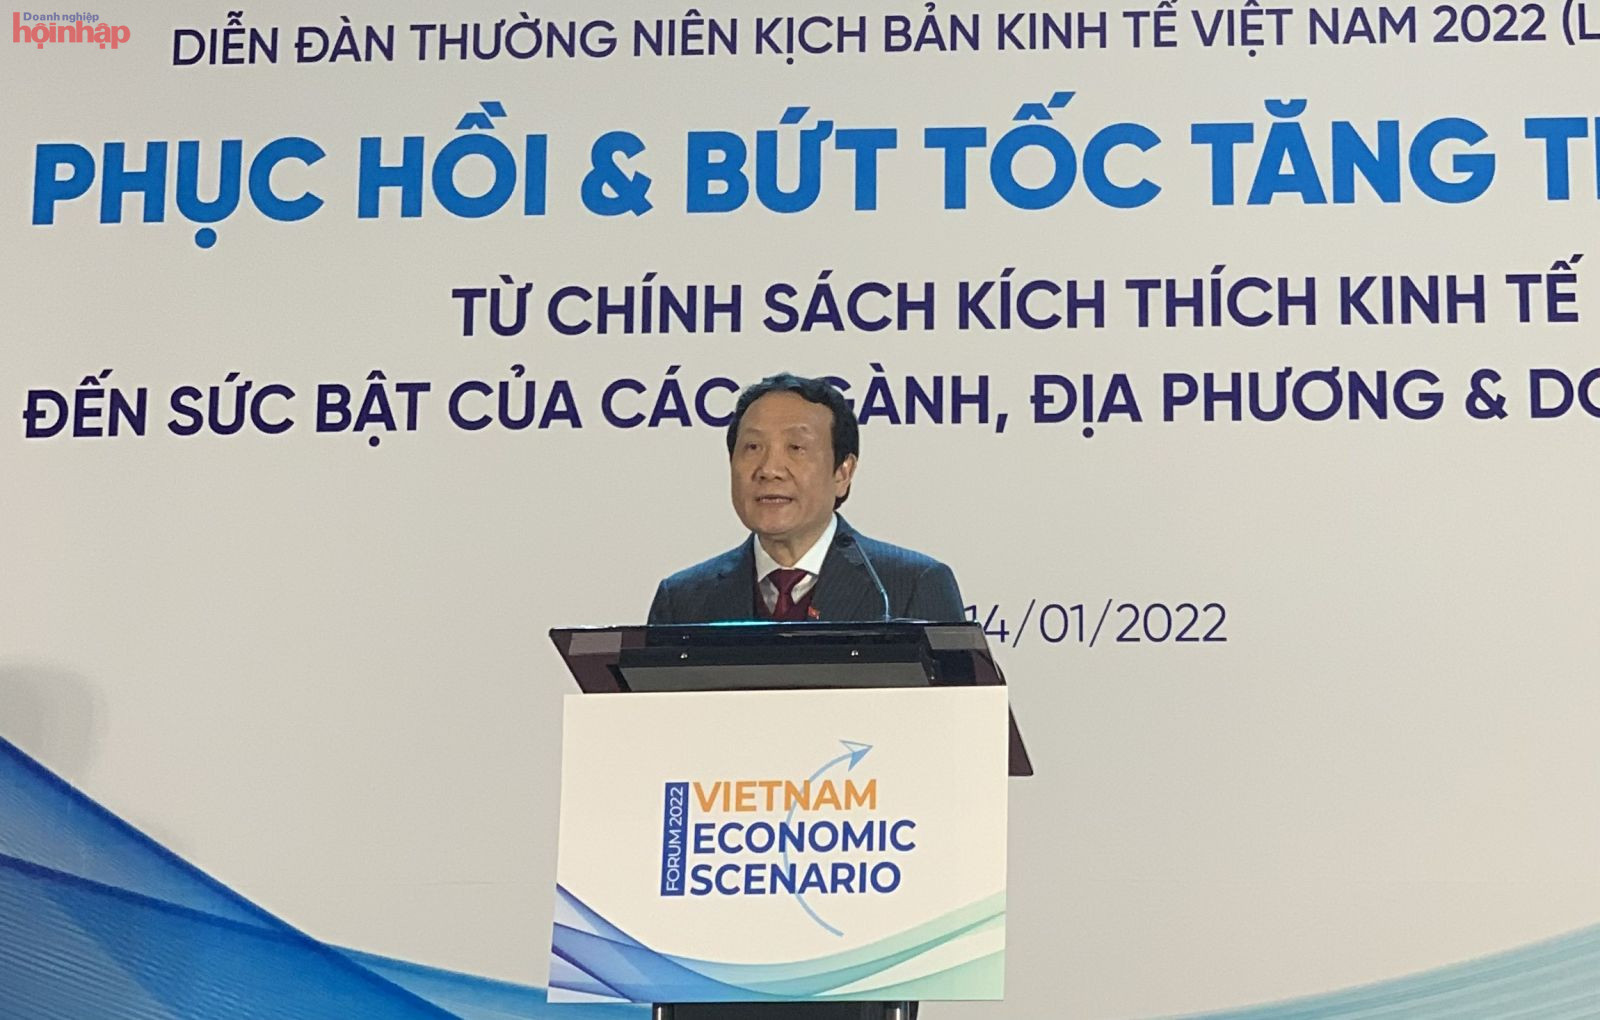 PGS.TS. Nguyễn Hồng Sơn, Phó Trưởng Ban Kinh tế Trung ương phát biểu